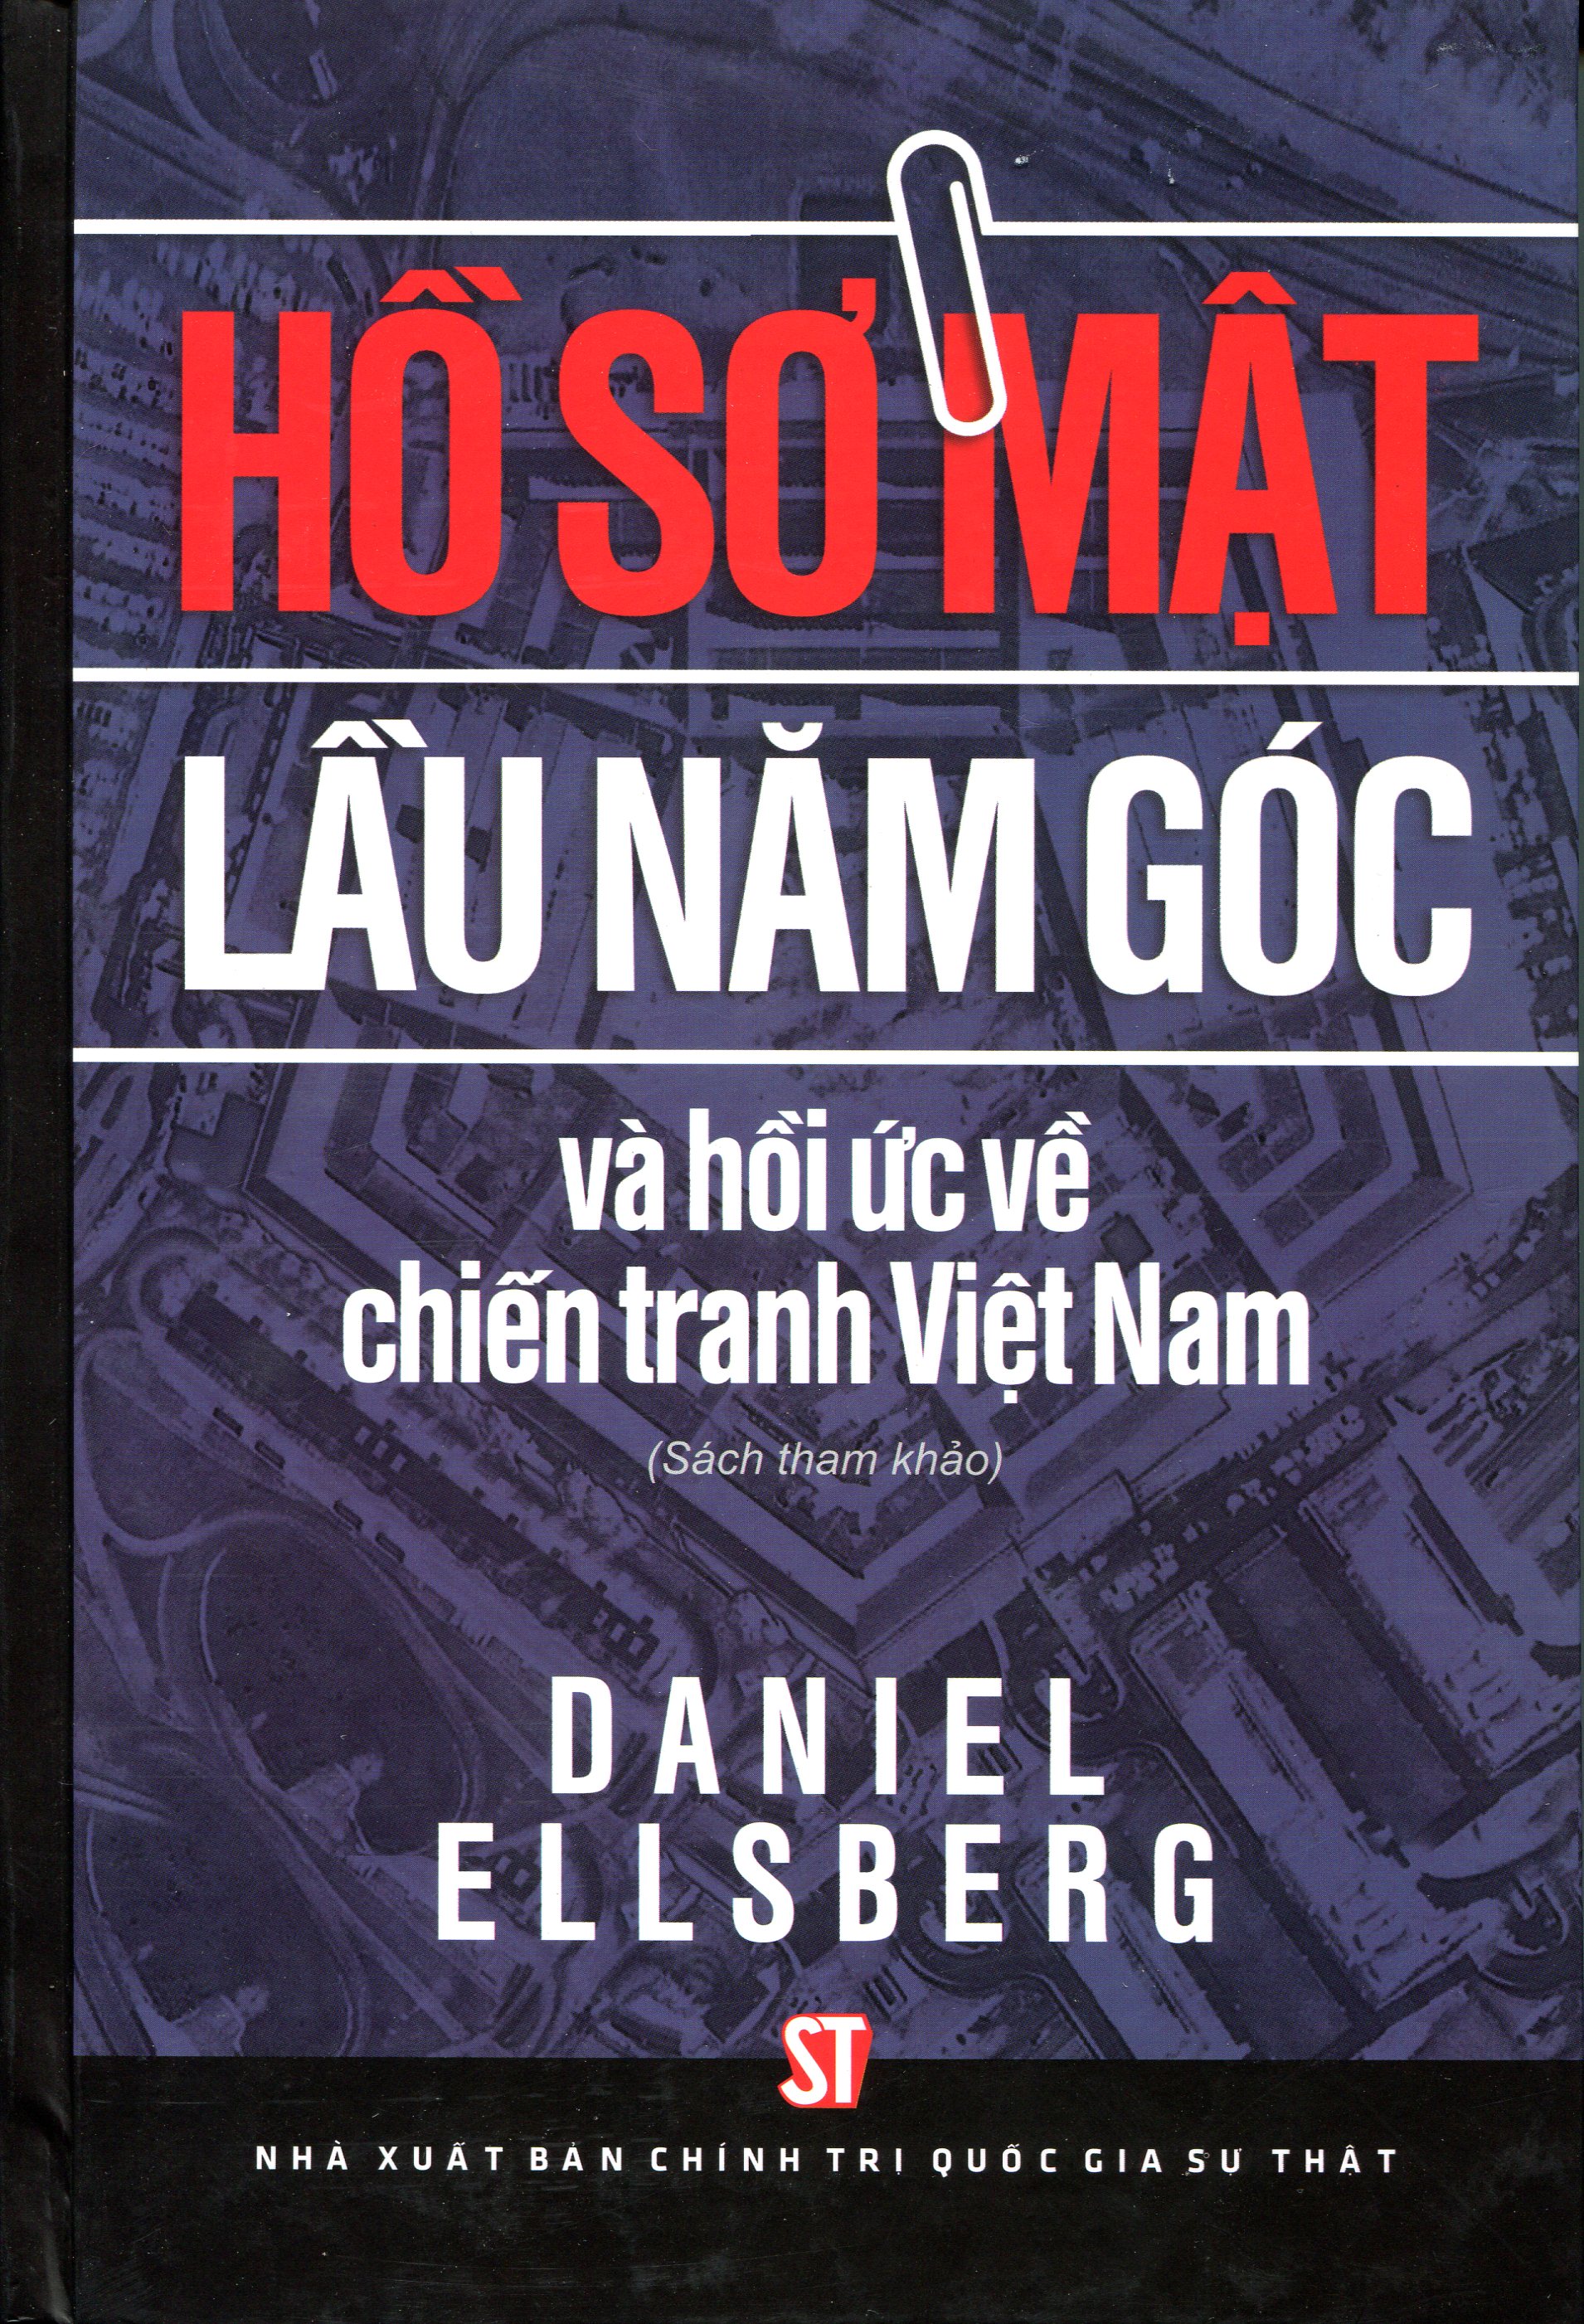 Hồ Sơ Mật Lầu 5 Góc Và Hồi Ức Về Chiến Tranh Việt Nam (Sách Tham Khảo)